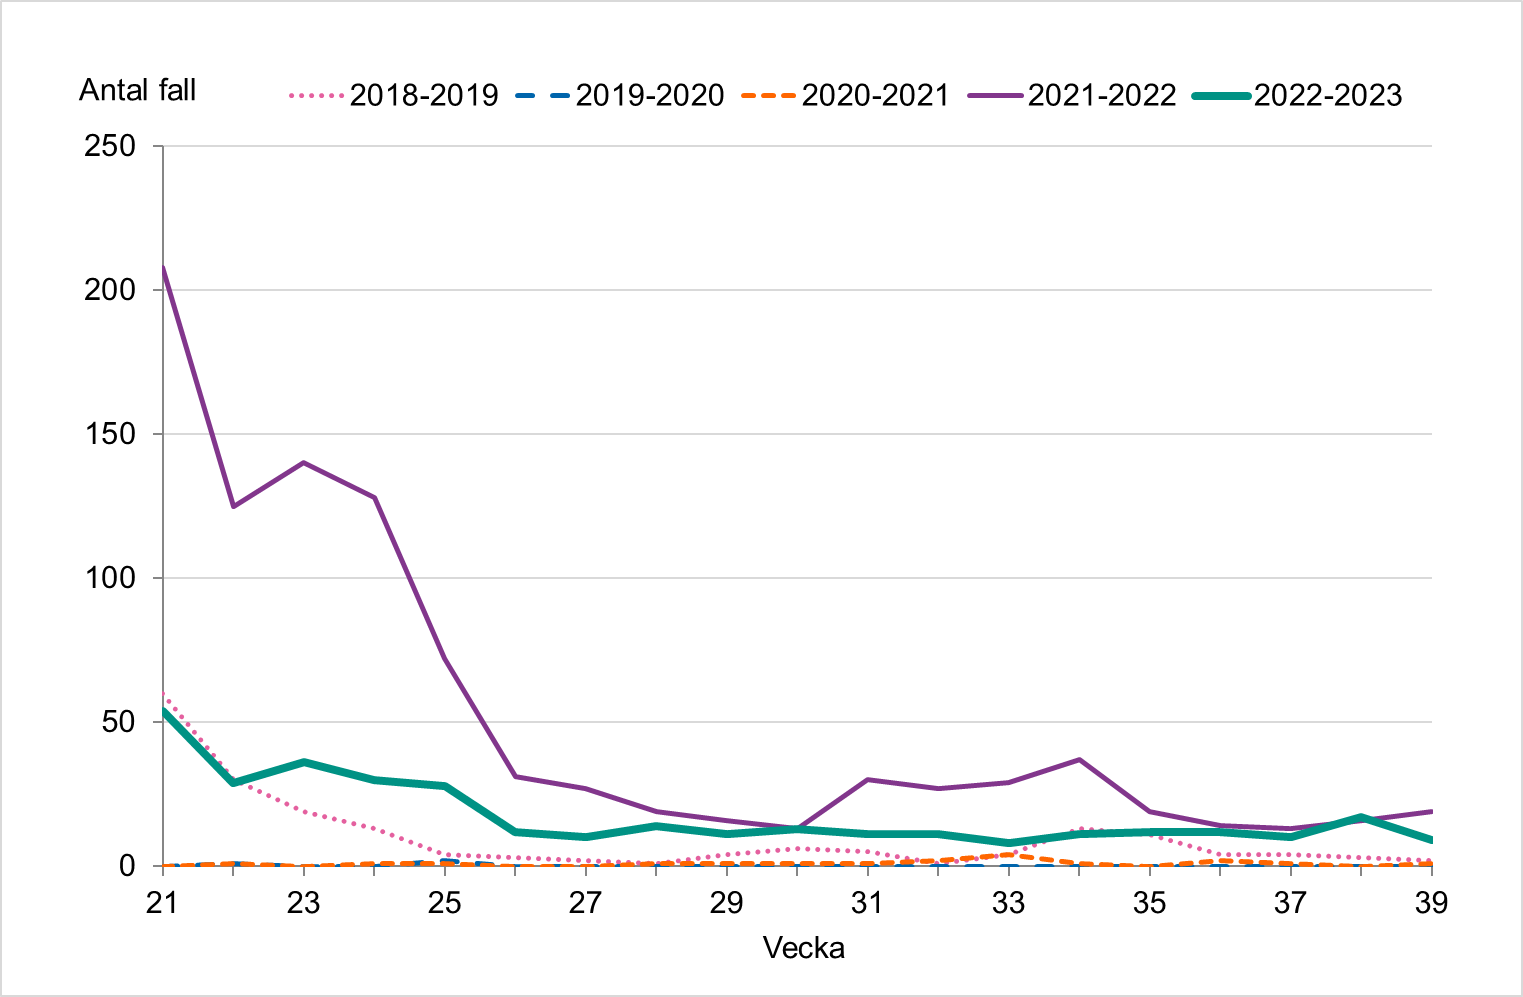 Antalet fall är lågt varje sommar. Vecka 21-25 2022 sågs fler fall då influensasäsongen avslutades senare än vanligt.